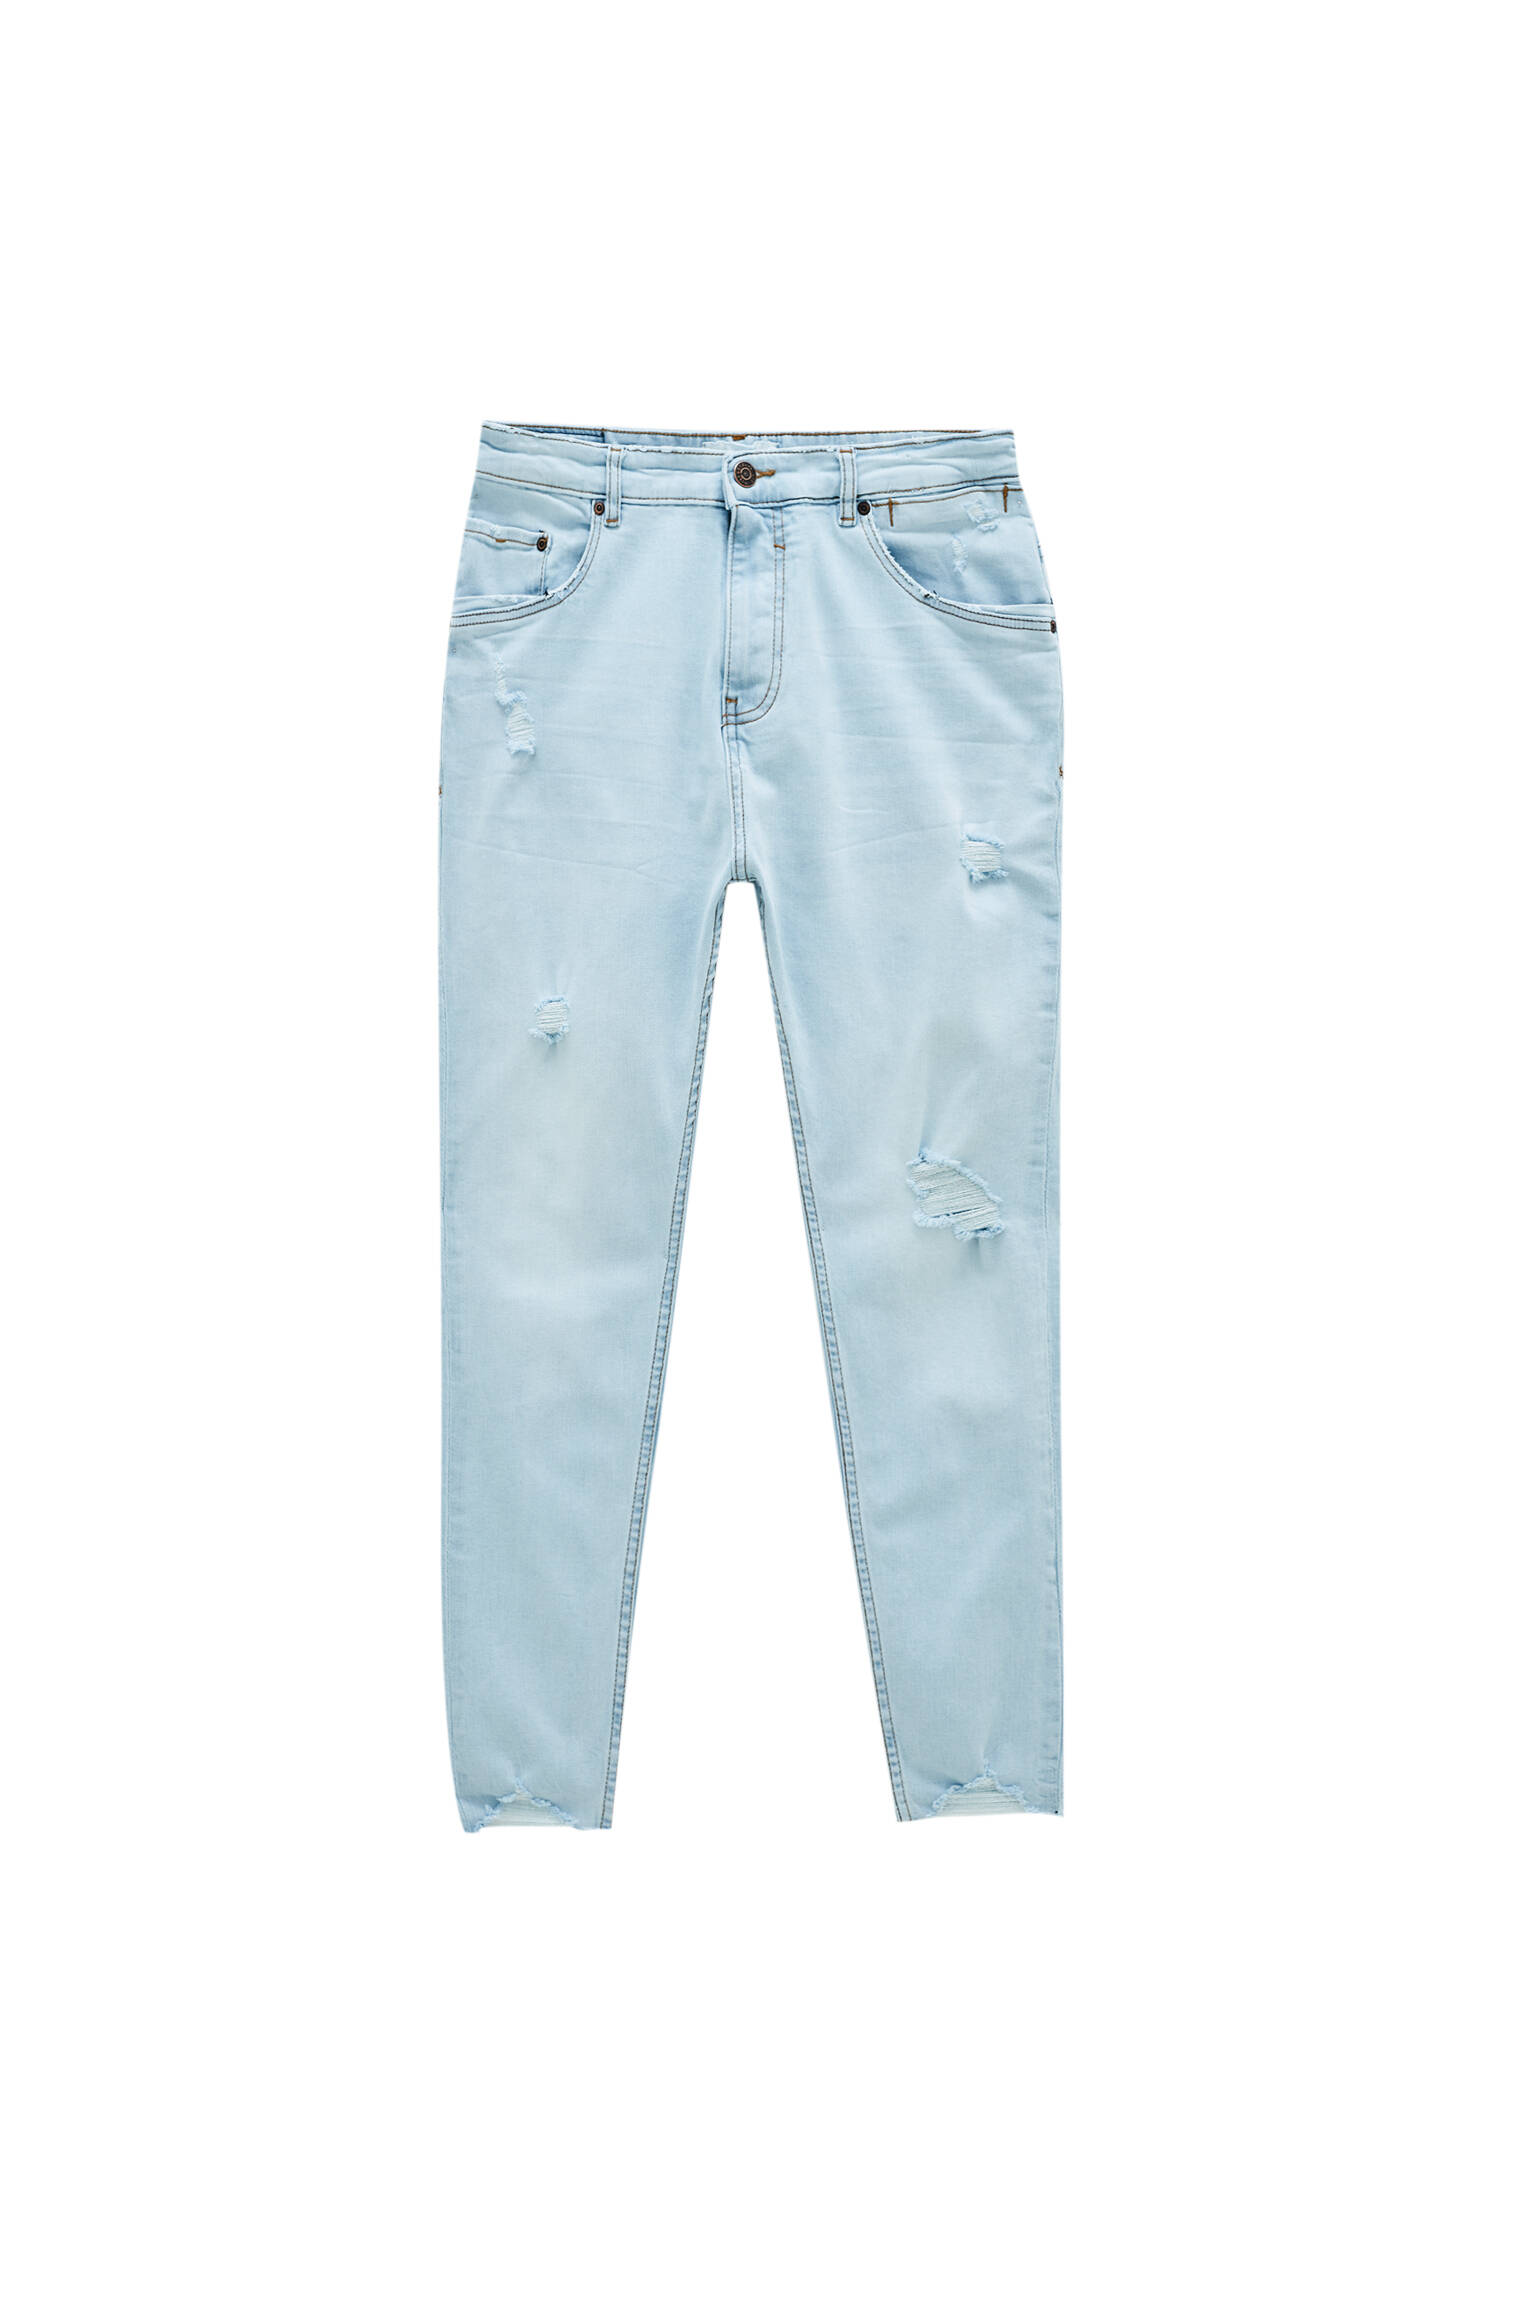 Голубые джинсы зауженного кроя - содержат переработанный хлопок ГОЛУБОЙ Pull & Bear